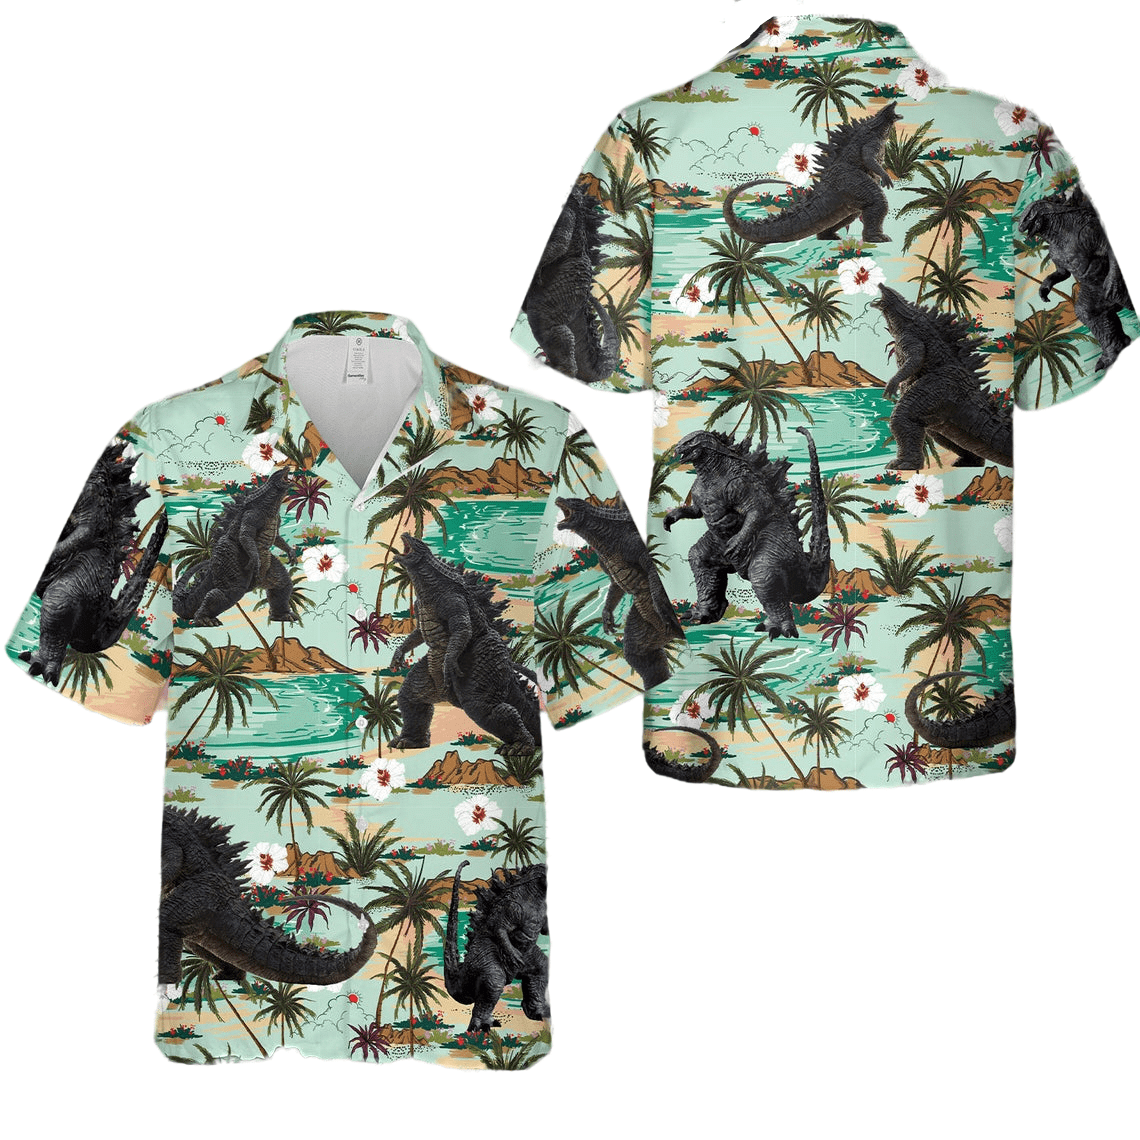 Godzilla coconut tree hawaiian shirt Style: Short Sleeve Hawaiian Shirt, Color: White